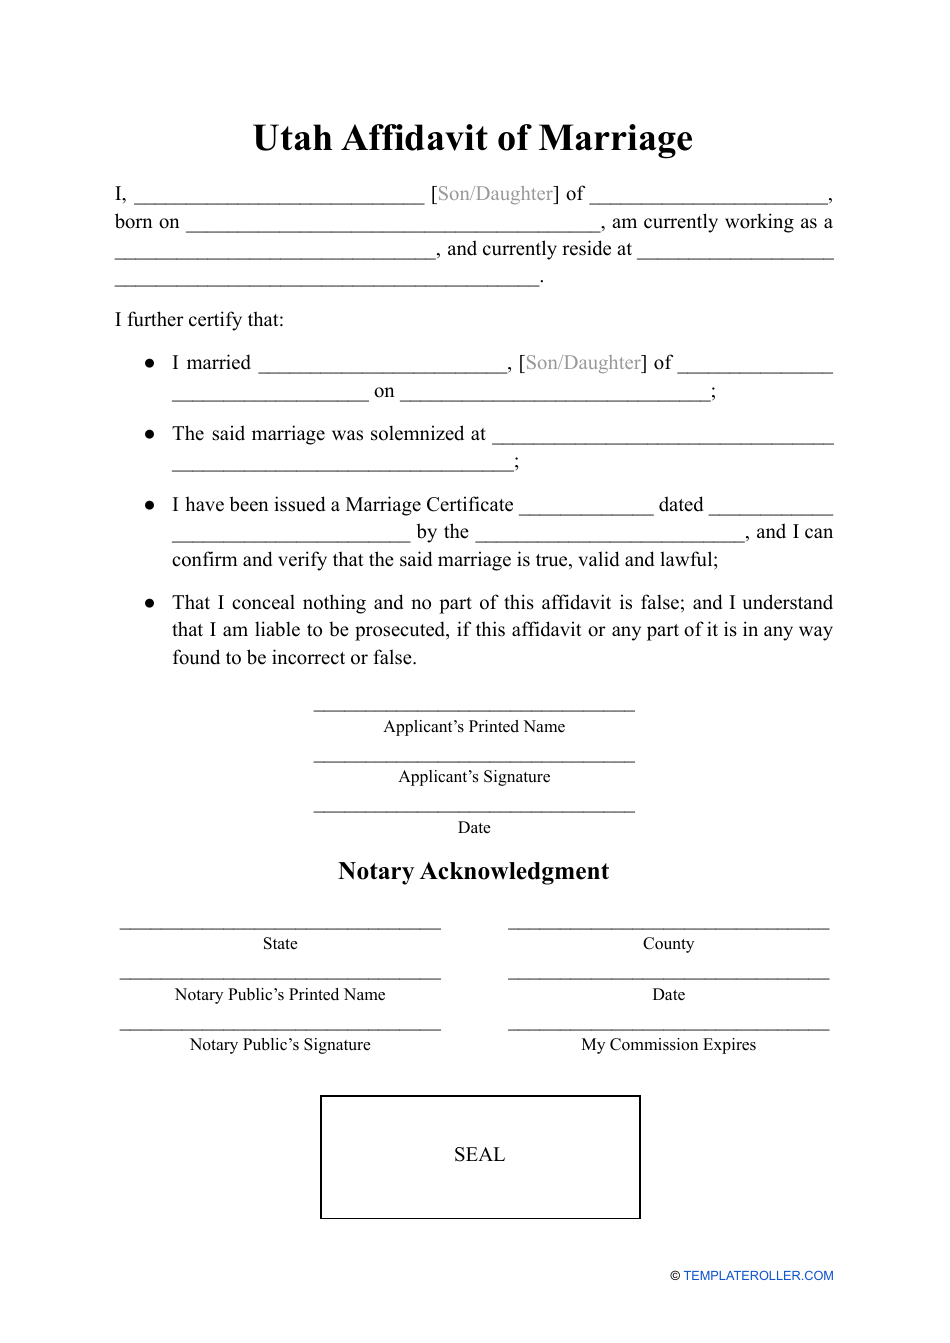 Affidavit of Marriage - Utah, Page 1